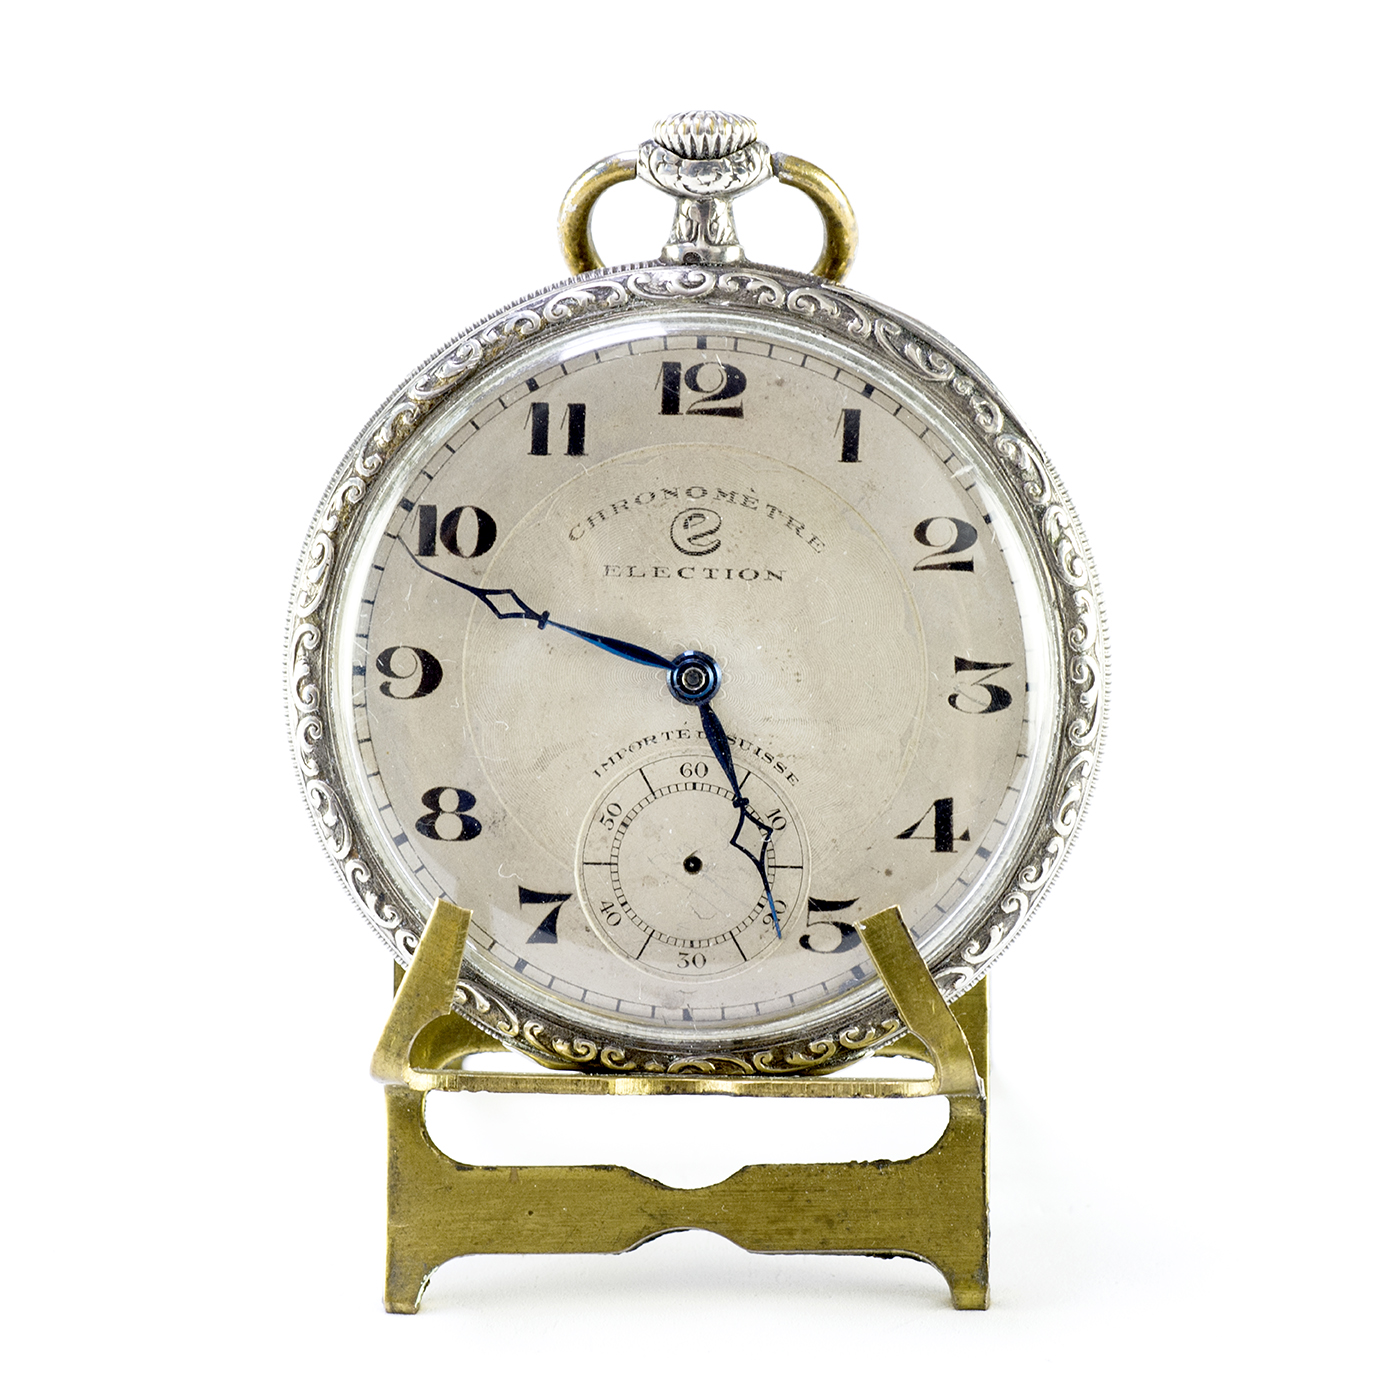 ELECTION . Reloj de bolsillo, lepine y remontoir. Suiza, ca. 1900.